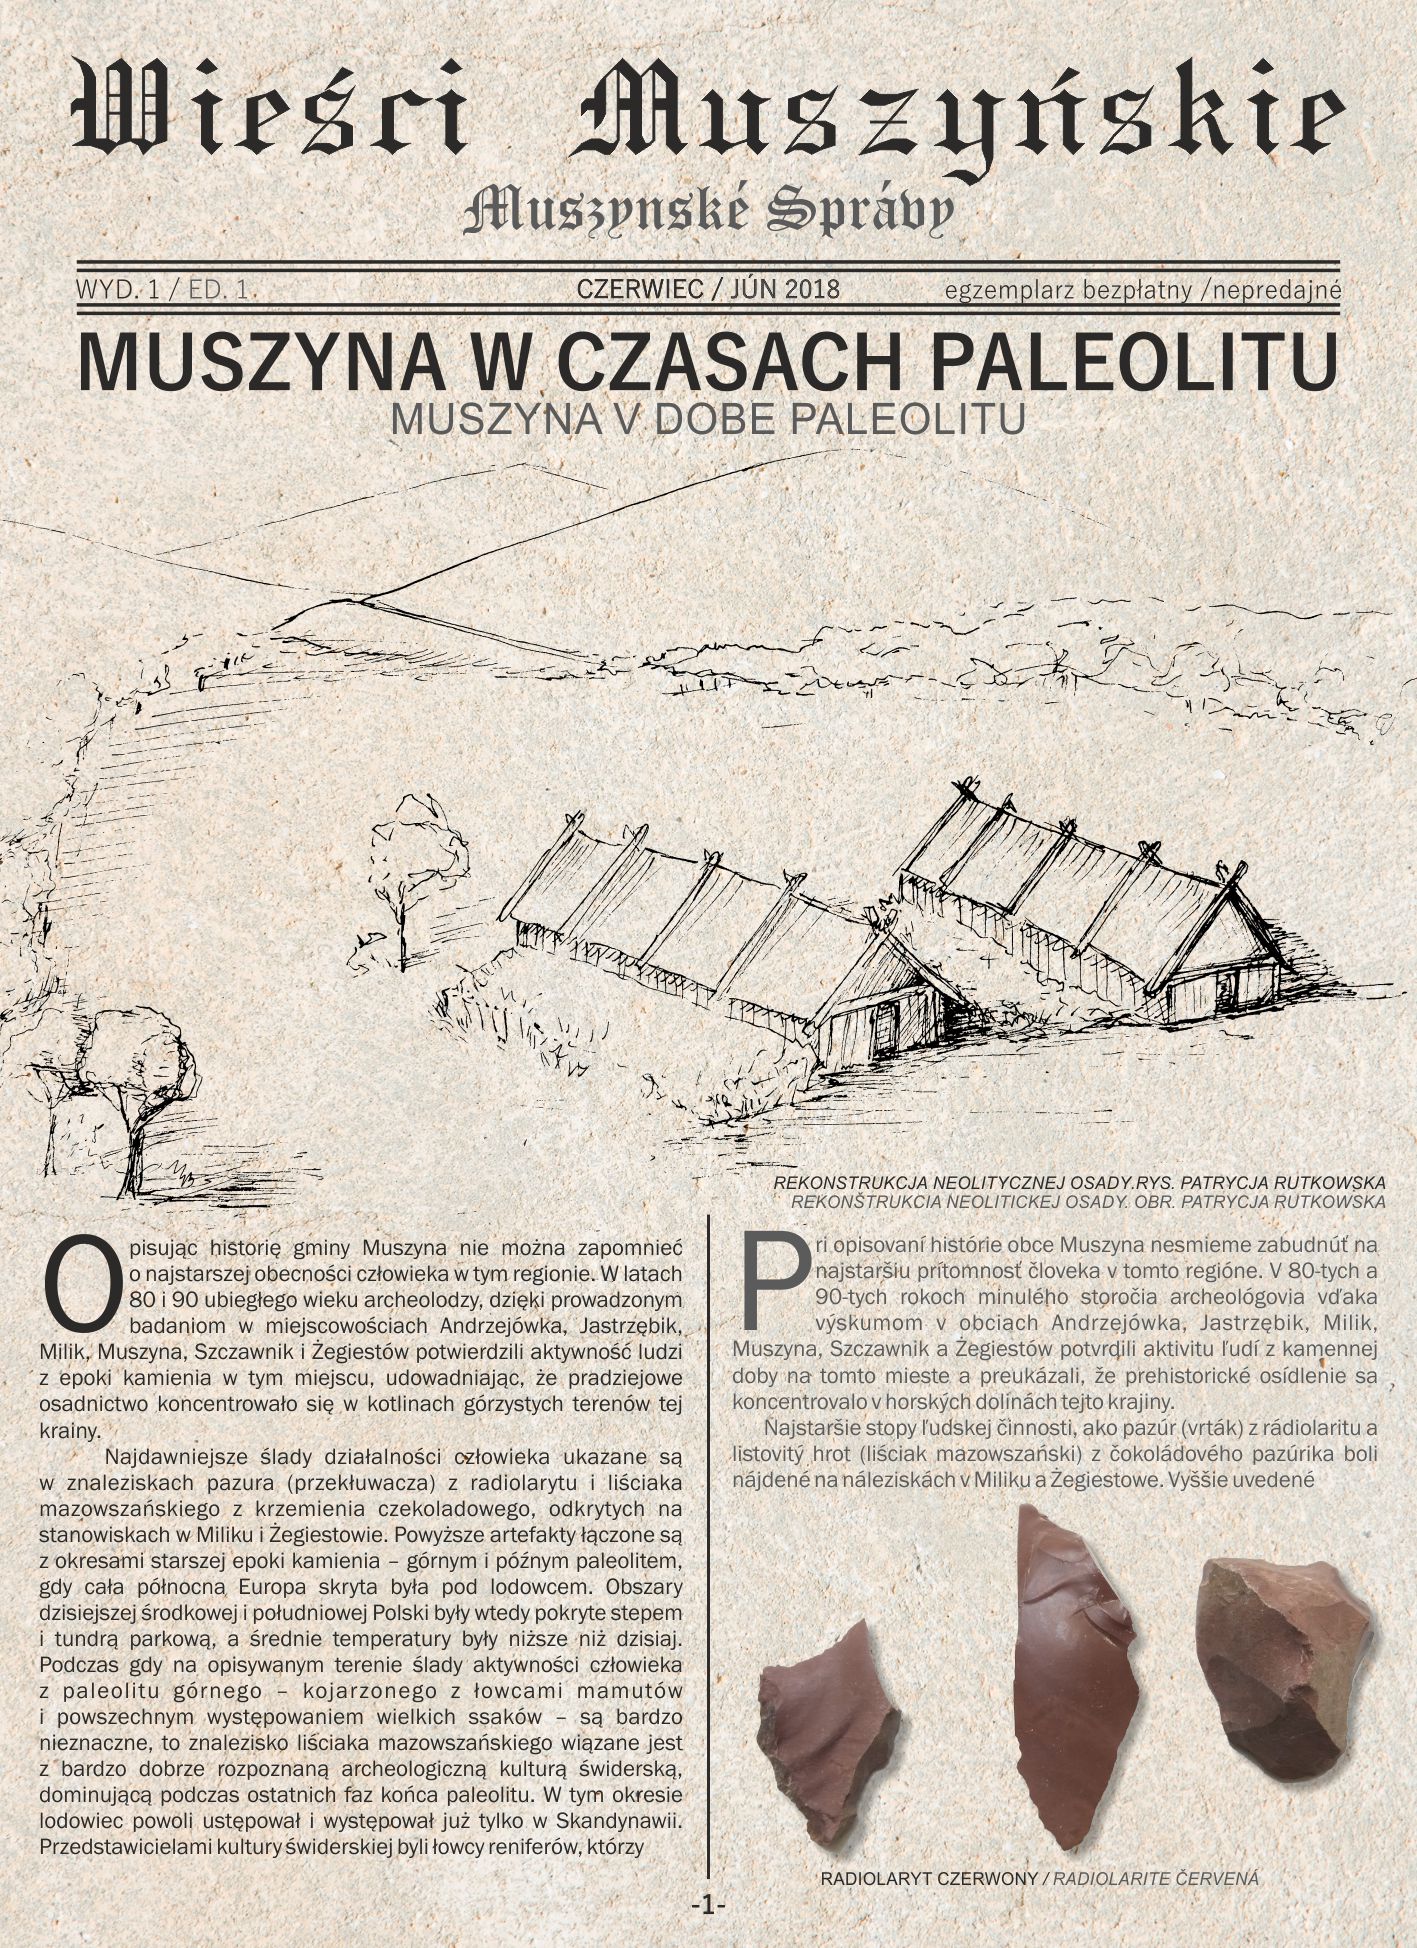 Muszyna – Plaveč: odkrywamy zapomnianą historię i kulturę polsko-słowackiego pogranicza